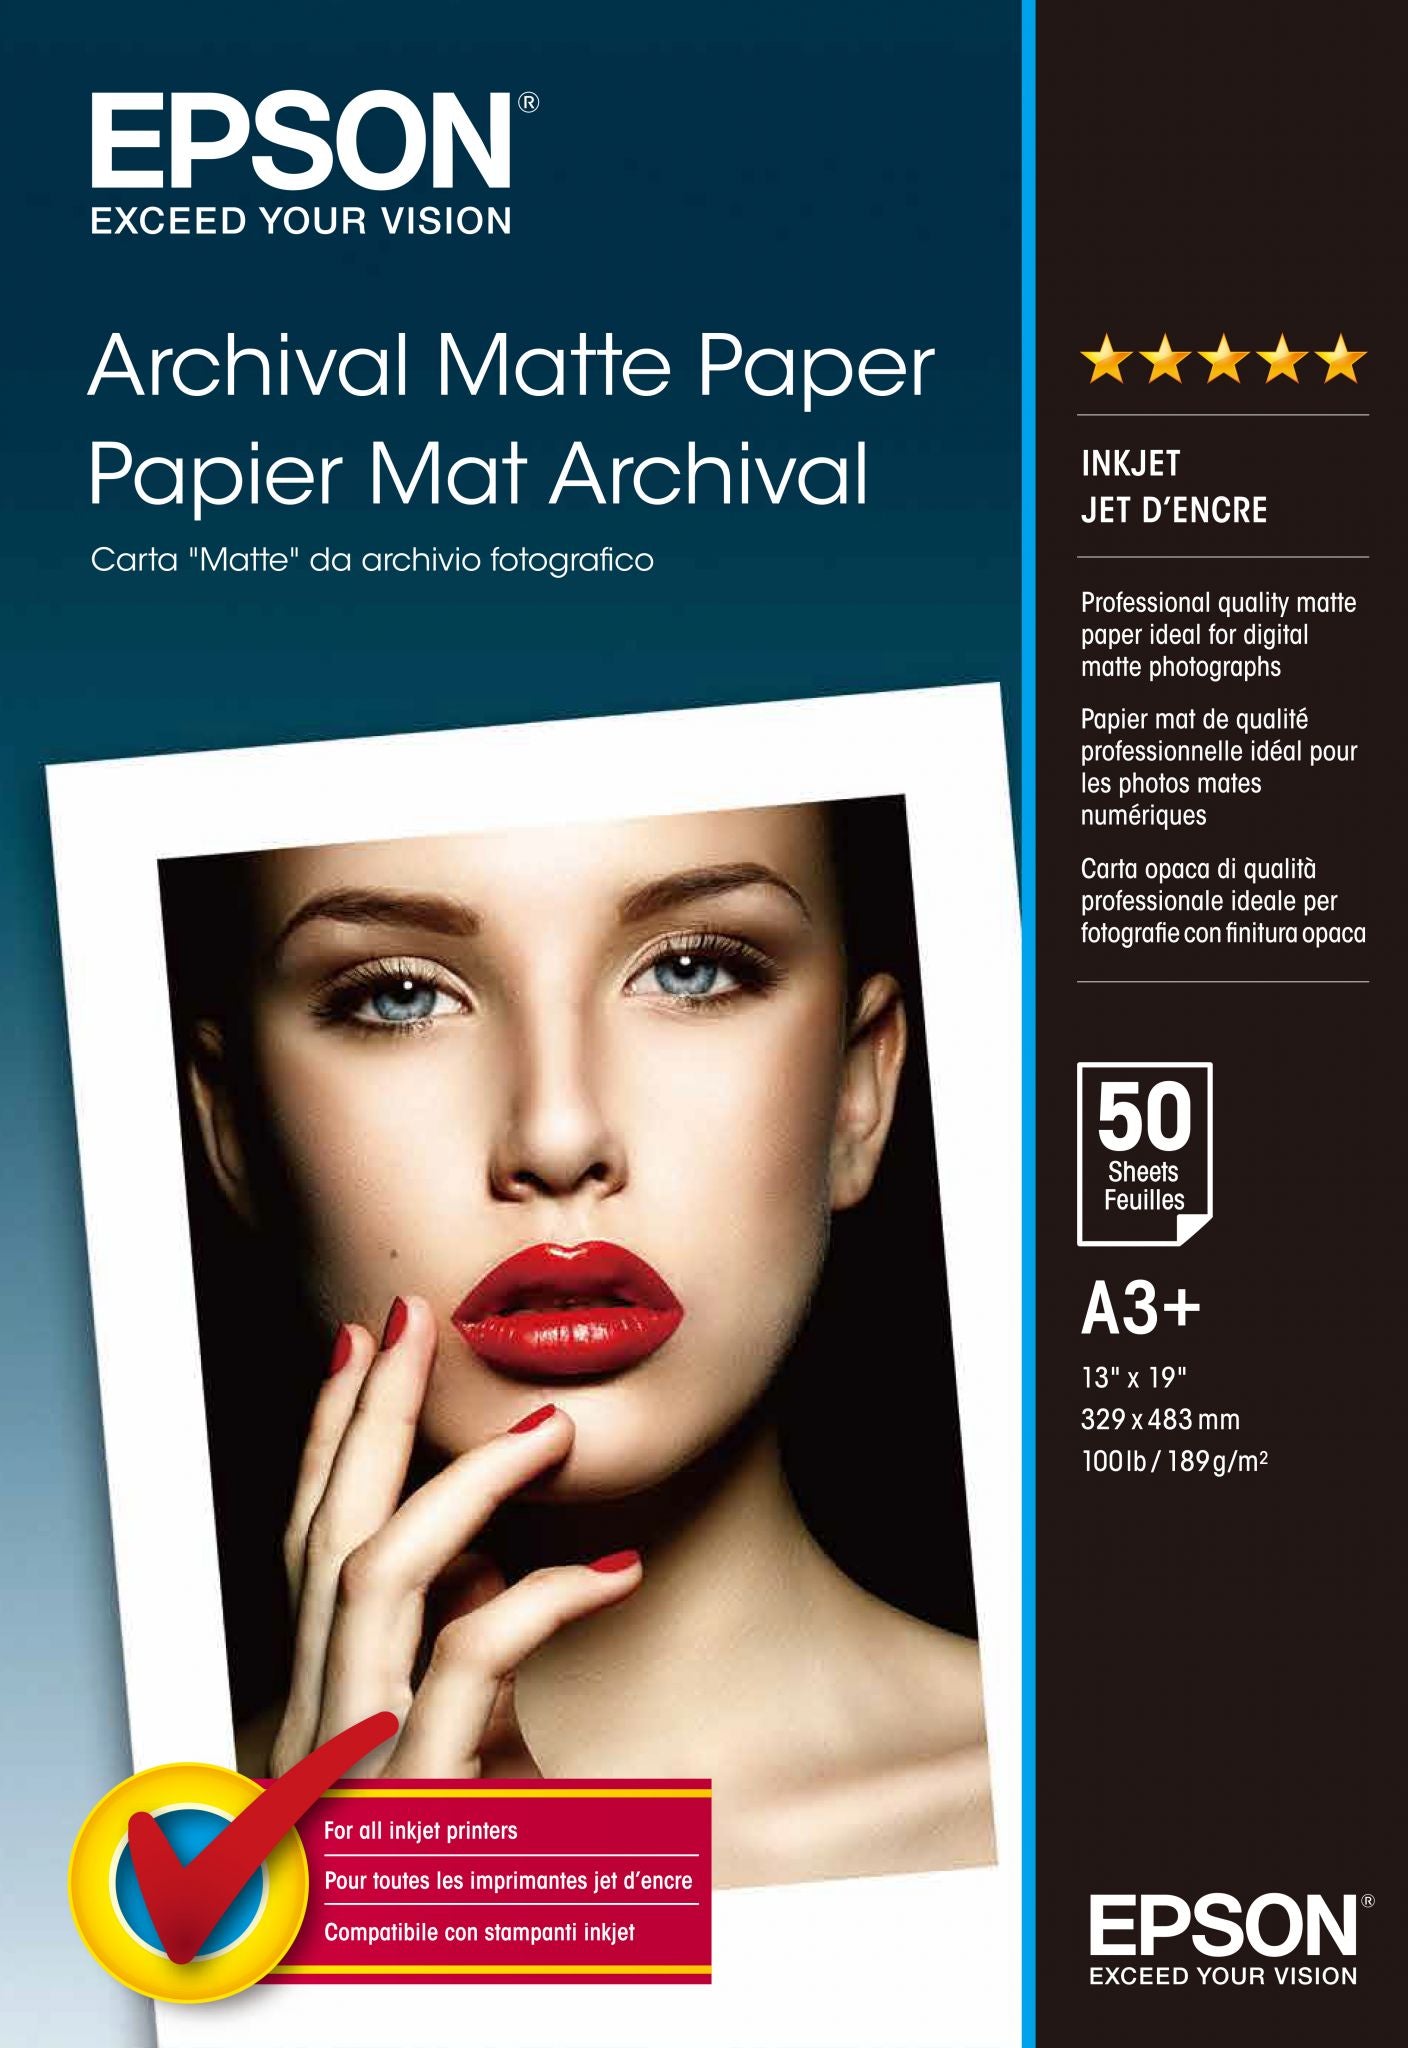 Epson Archival Matte Paper papier jet d'encre A3+ (330x483 mm) Mat 50 feuilles Blanc Epson